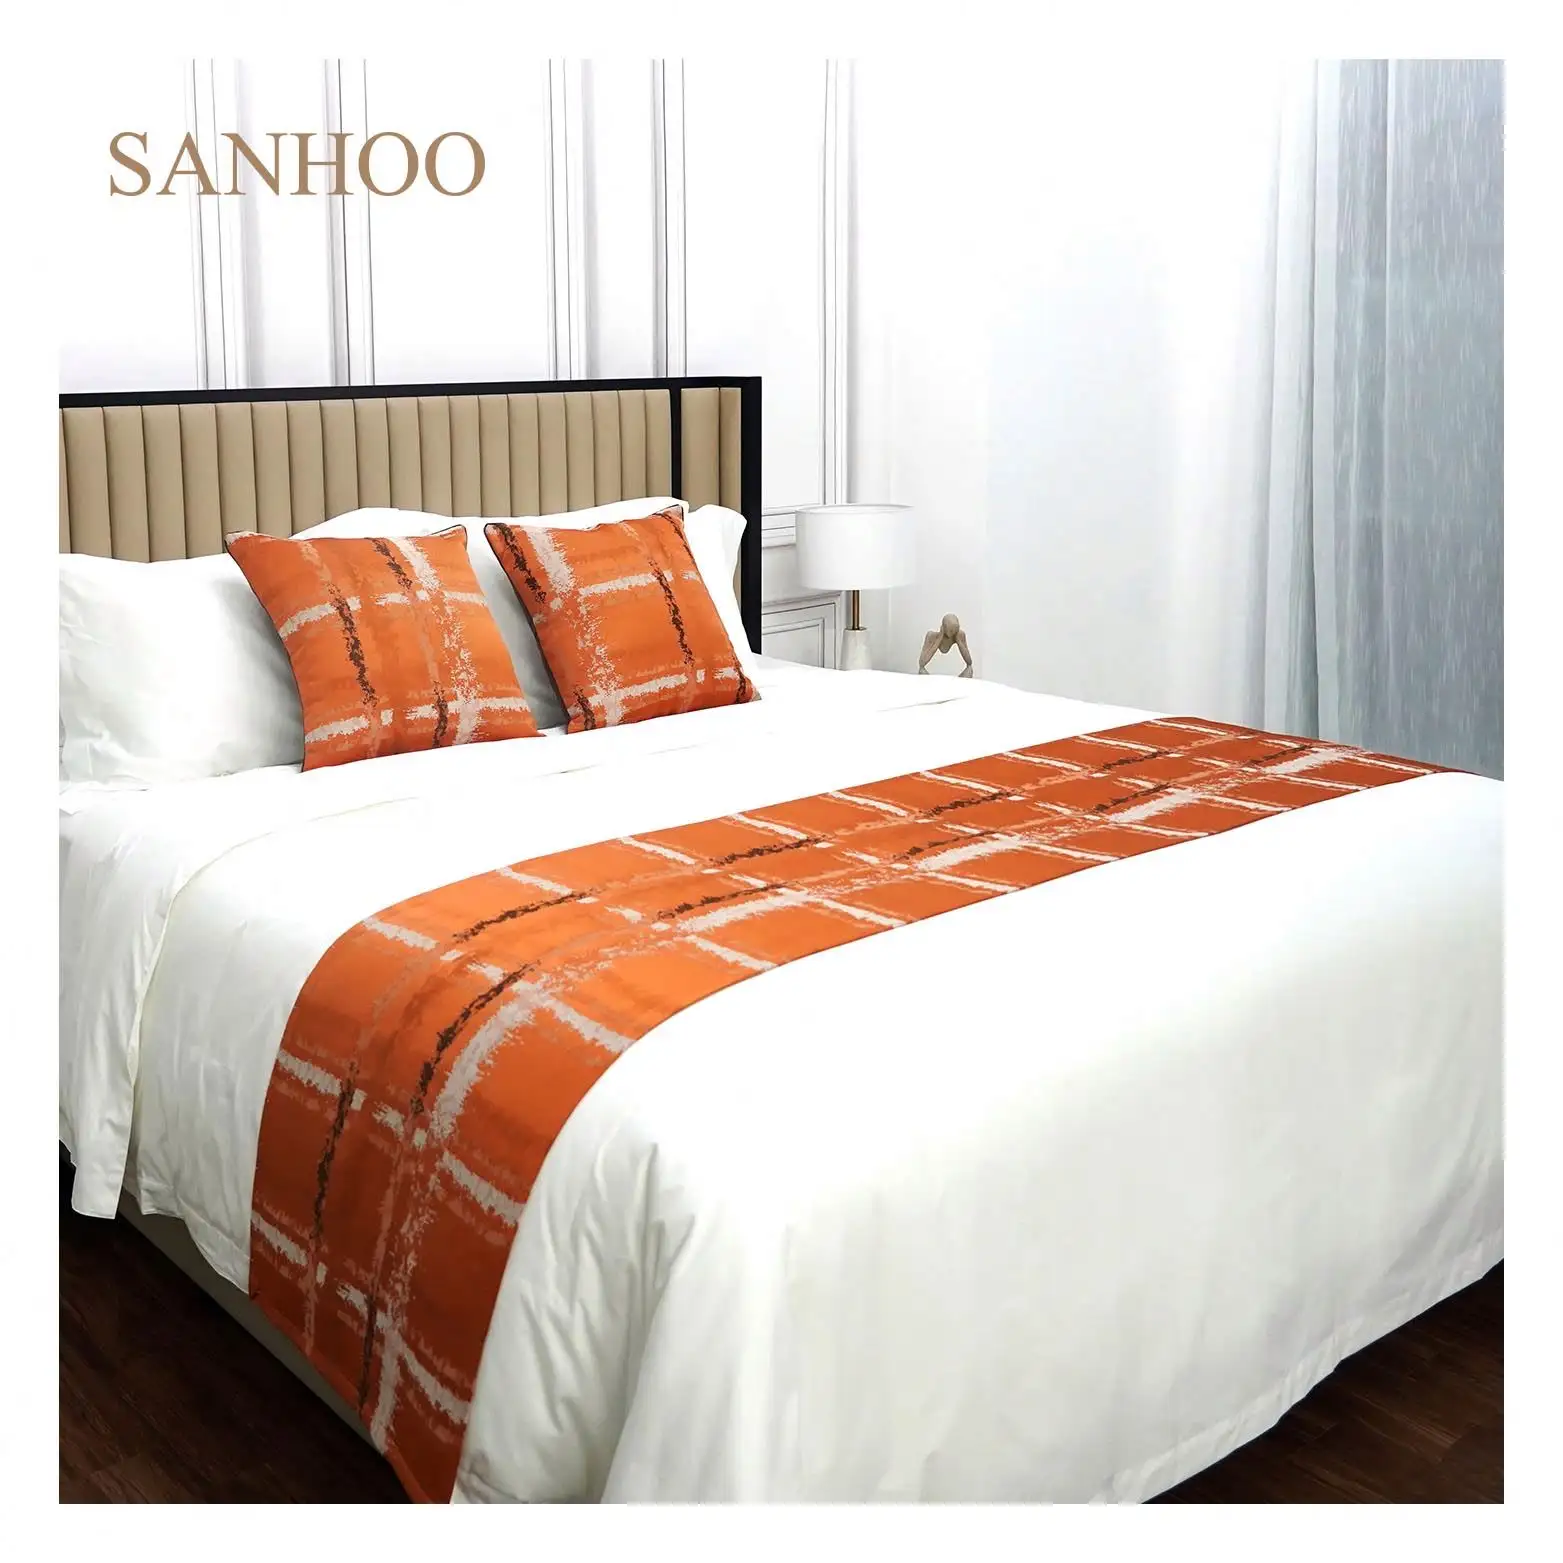 SANHOO सस्ते होटल राजा आकार 100 कपास बिस्तर सेट बिस्तर राजा आकार होटल Bedsheets बिस्तर सेट 100% कपास 1800Tc